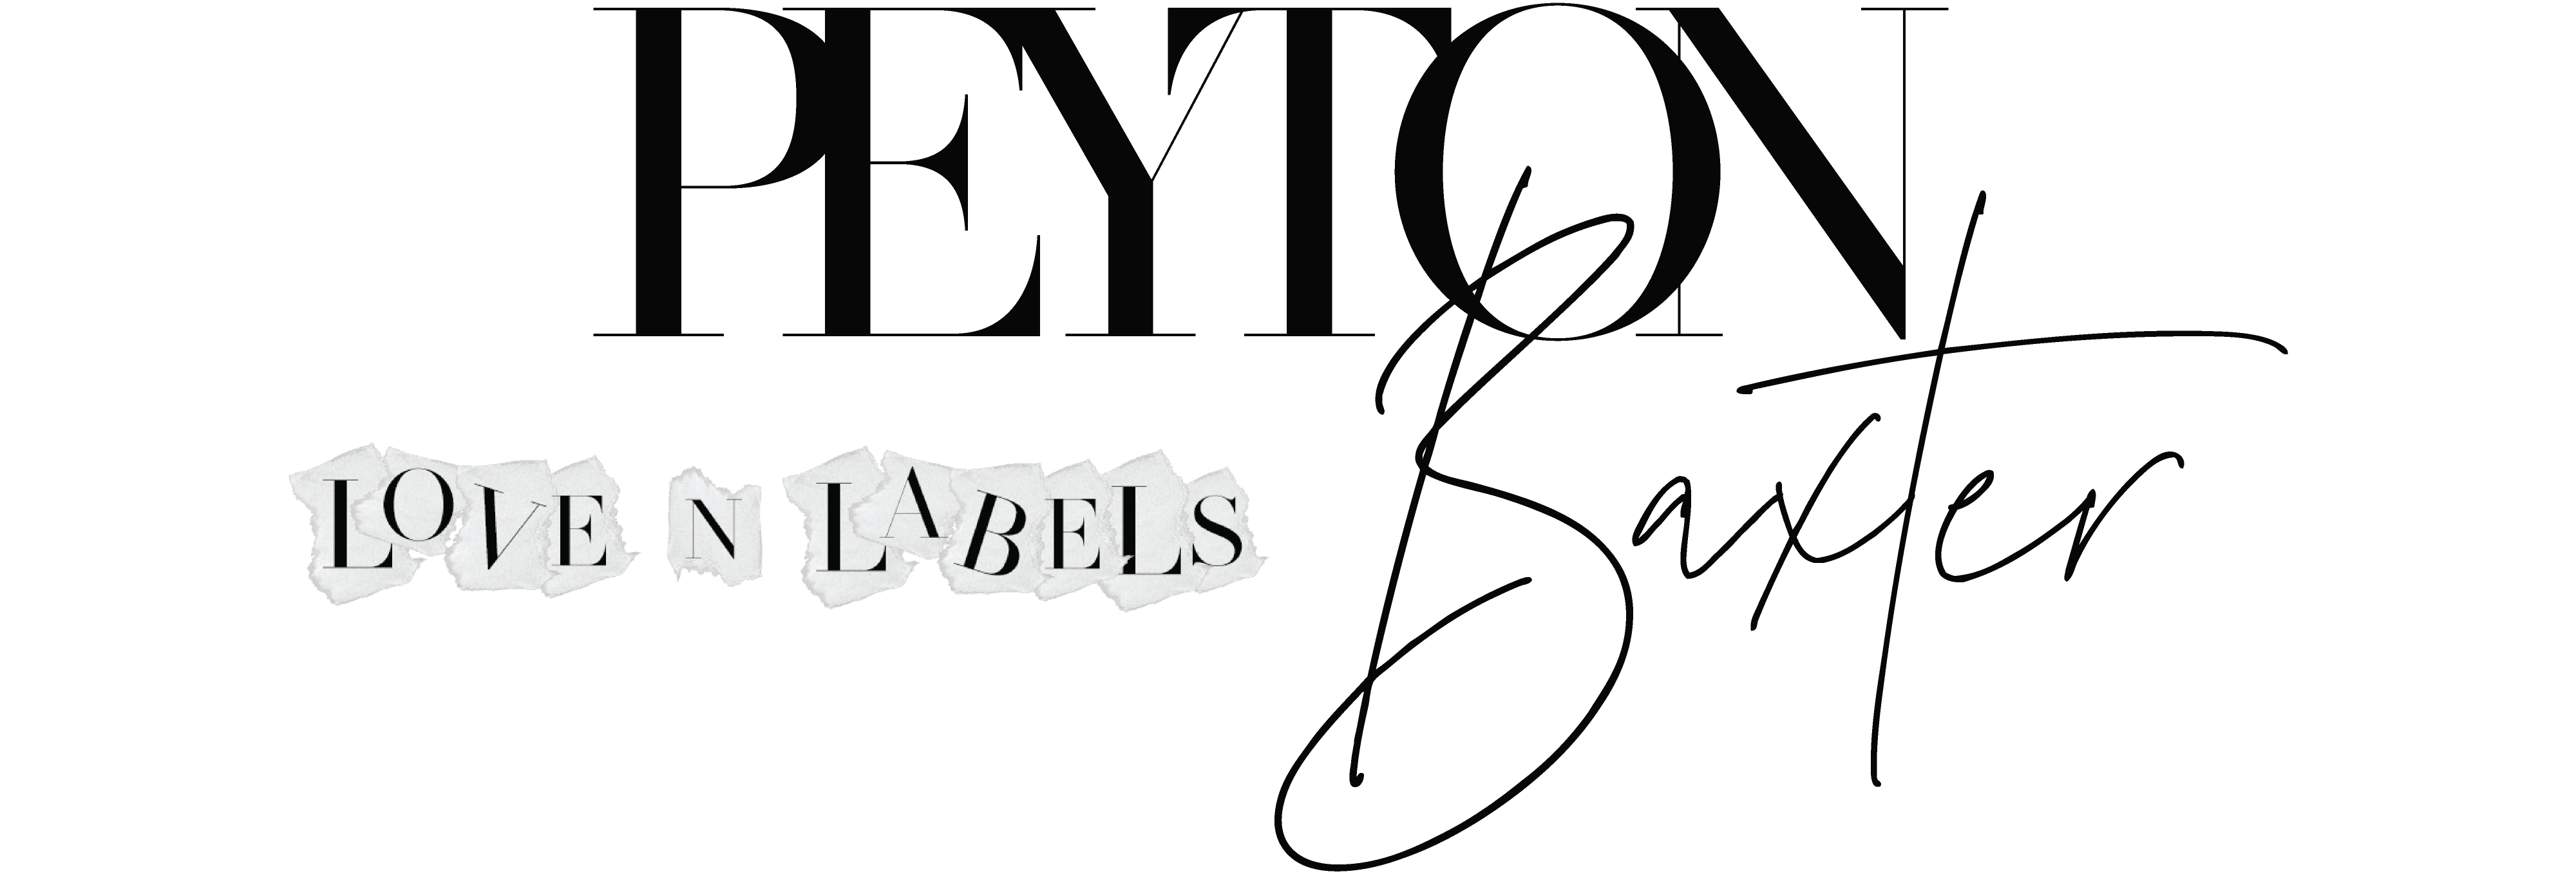 Navy Haircare x Peyton Baxter KAI KIT Launch - Love 'N' Labels